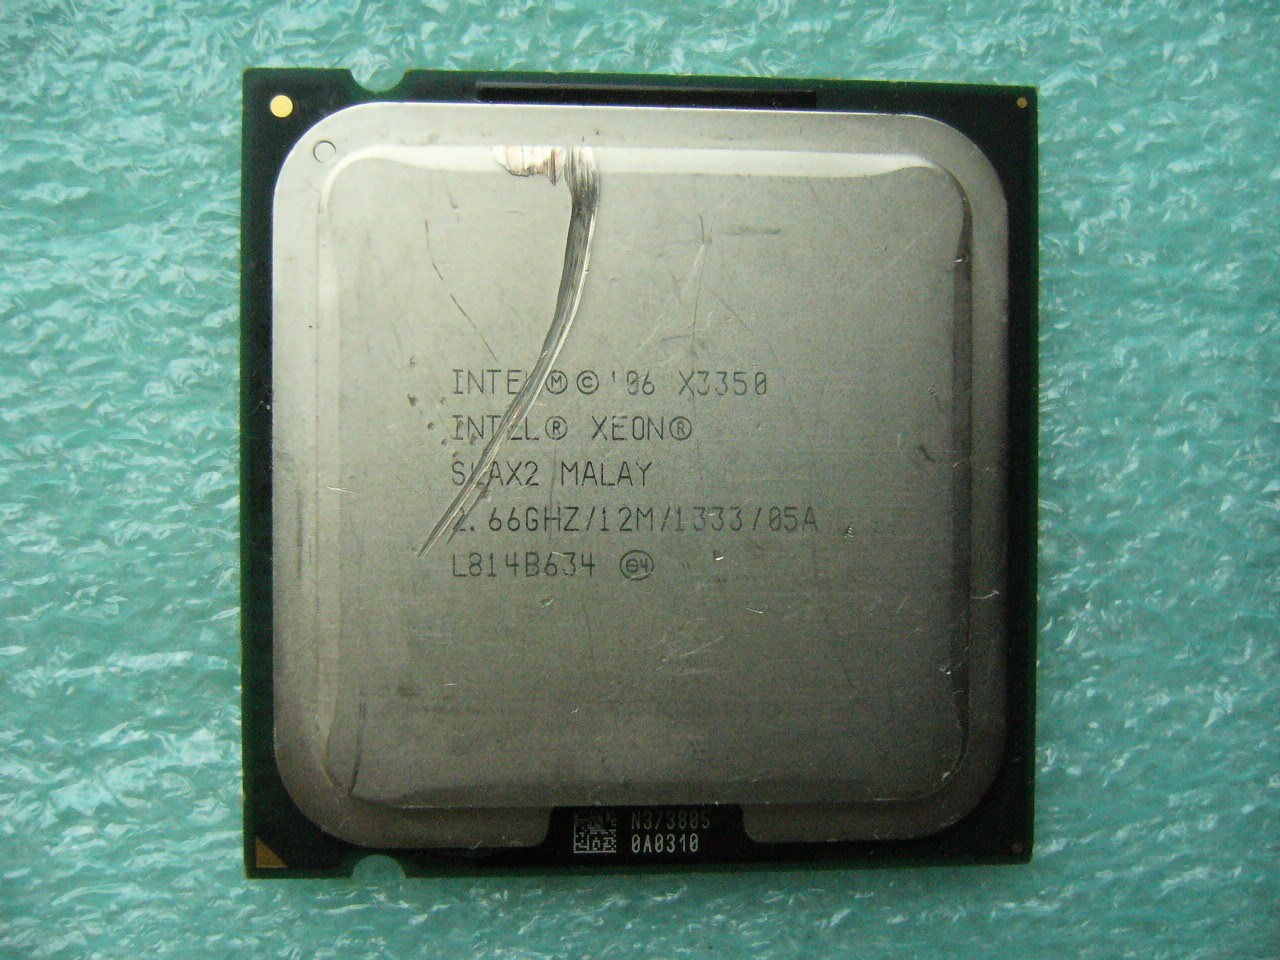 QTY 1x INTEL Quad Cores X3350 CPU 2.66GHz/12MB/1333Mhz LGA775 SLAX2